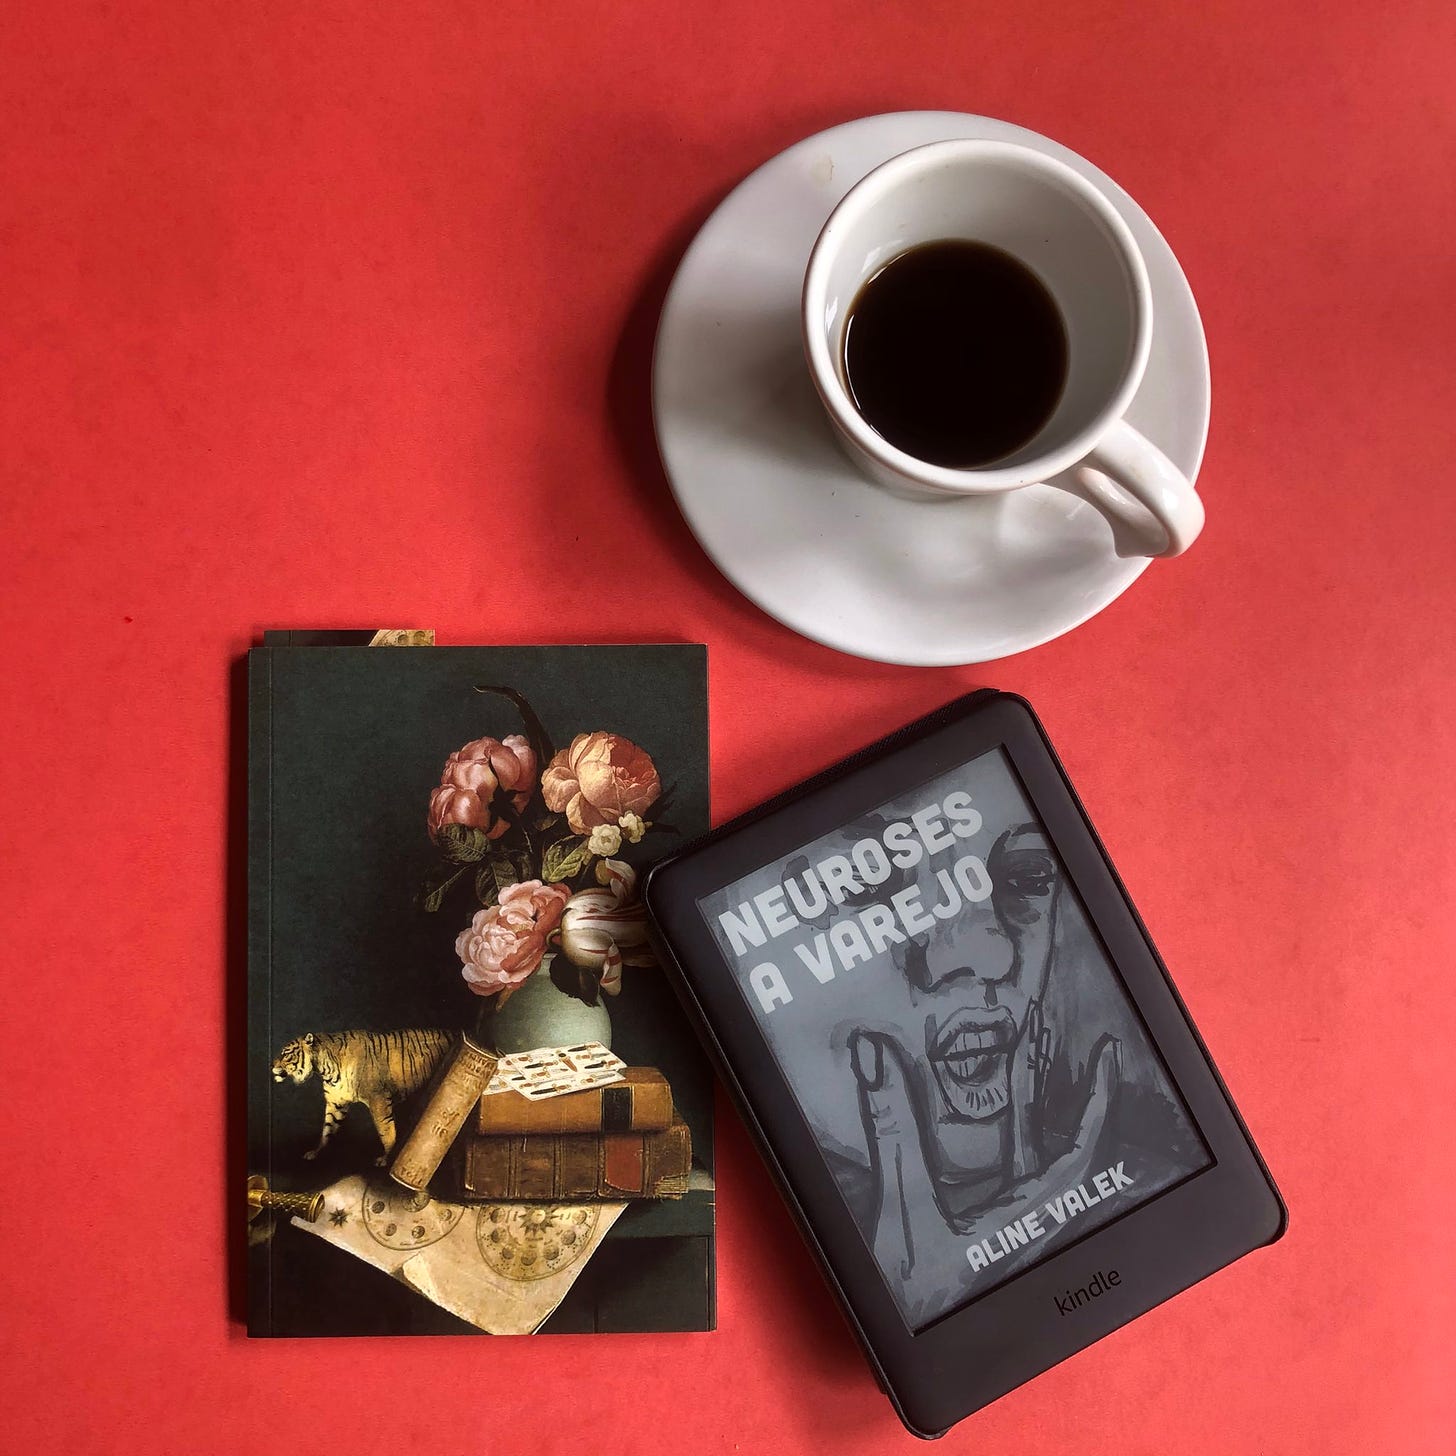 um kindle com a capa de neuroses a varejo ao lado de um caderno e uma xícara de café, sobre fundo vermelho